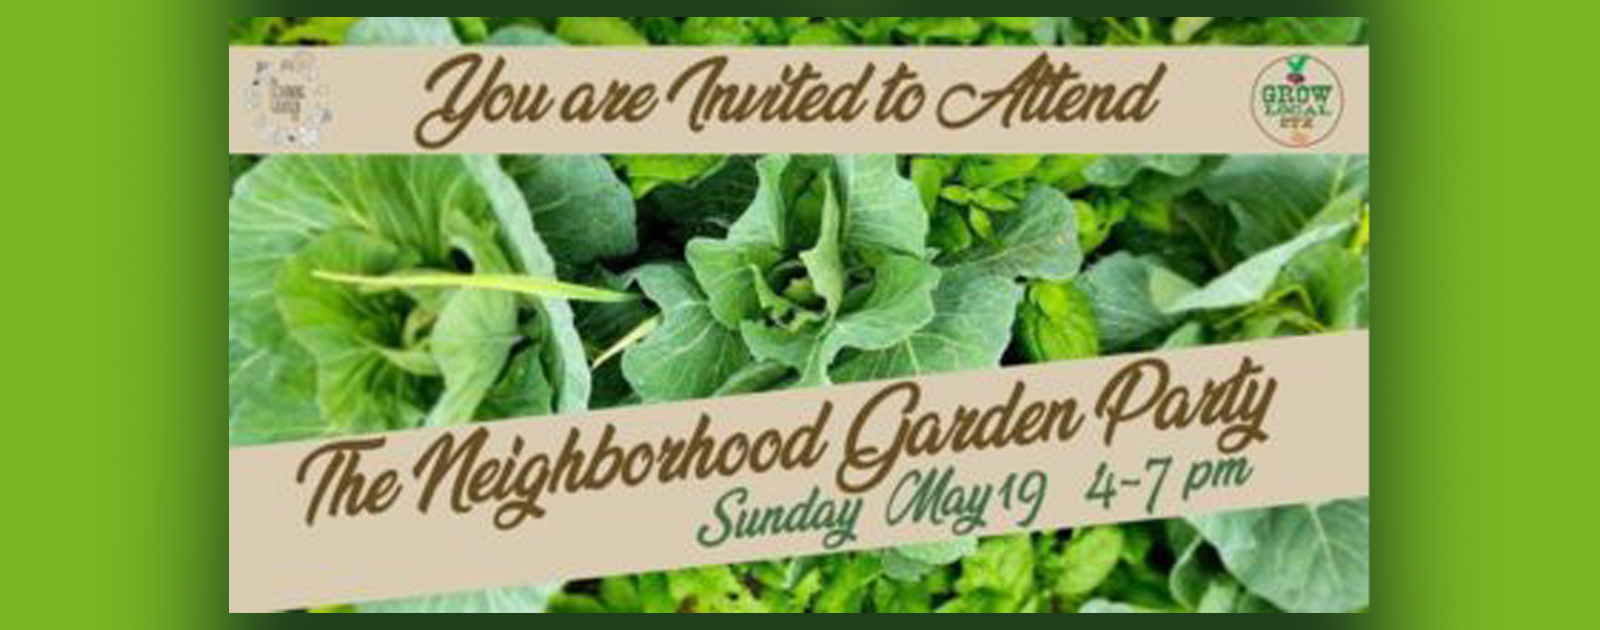 Neighborhood garden party invitation